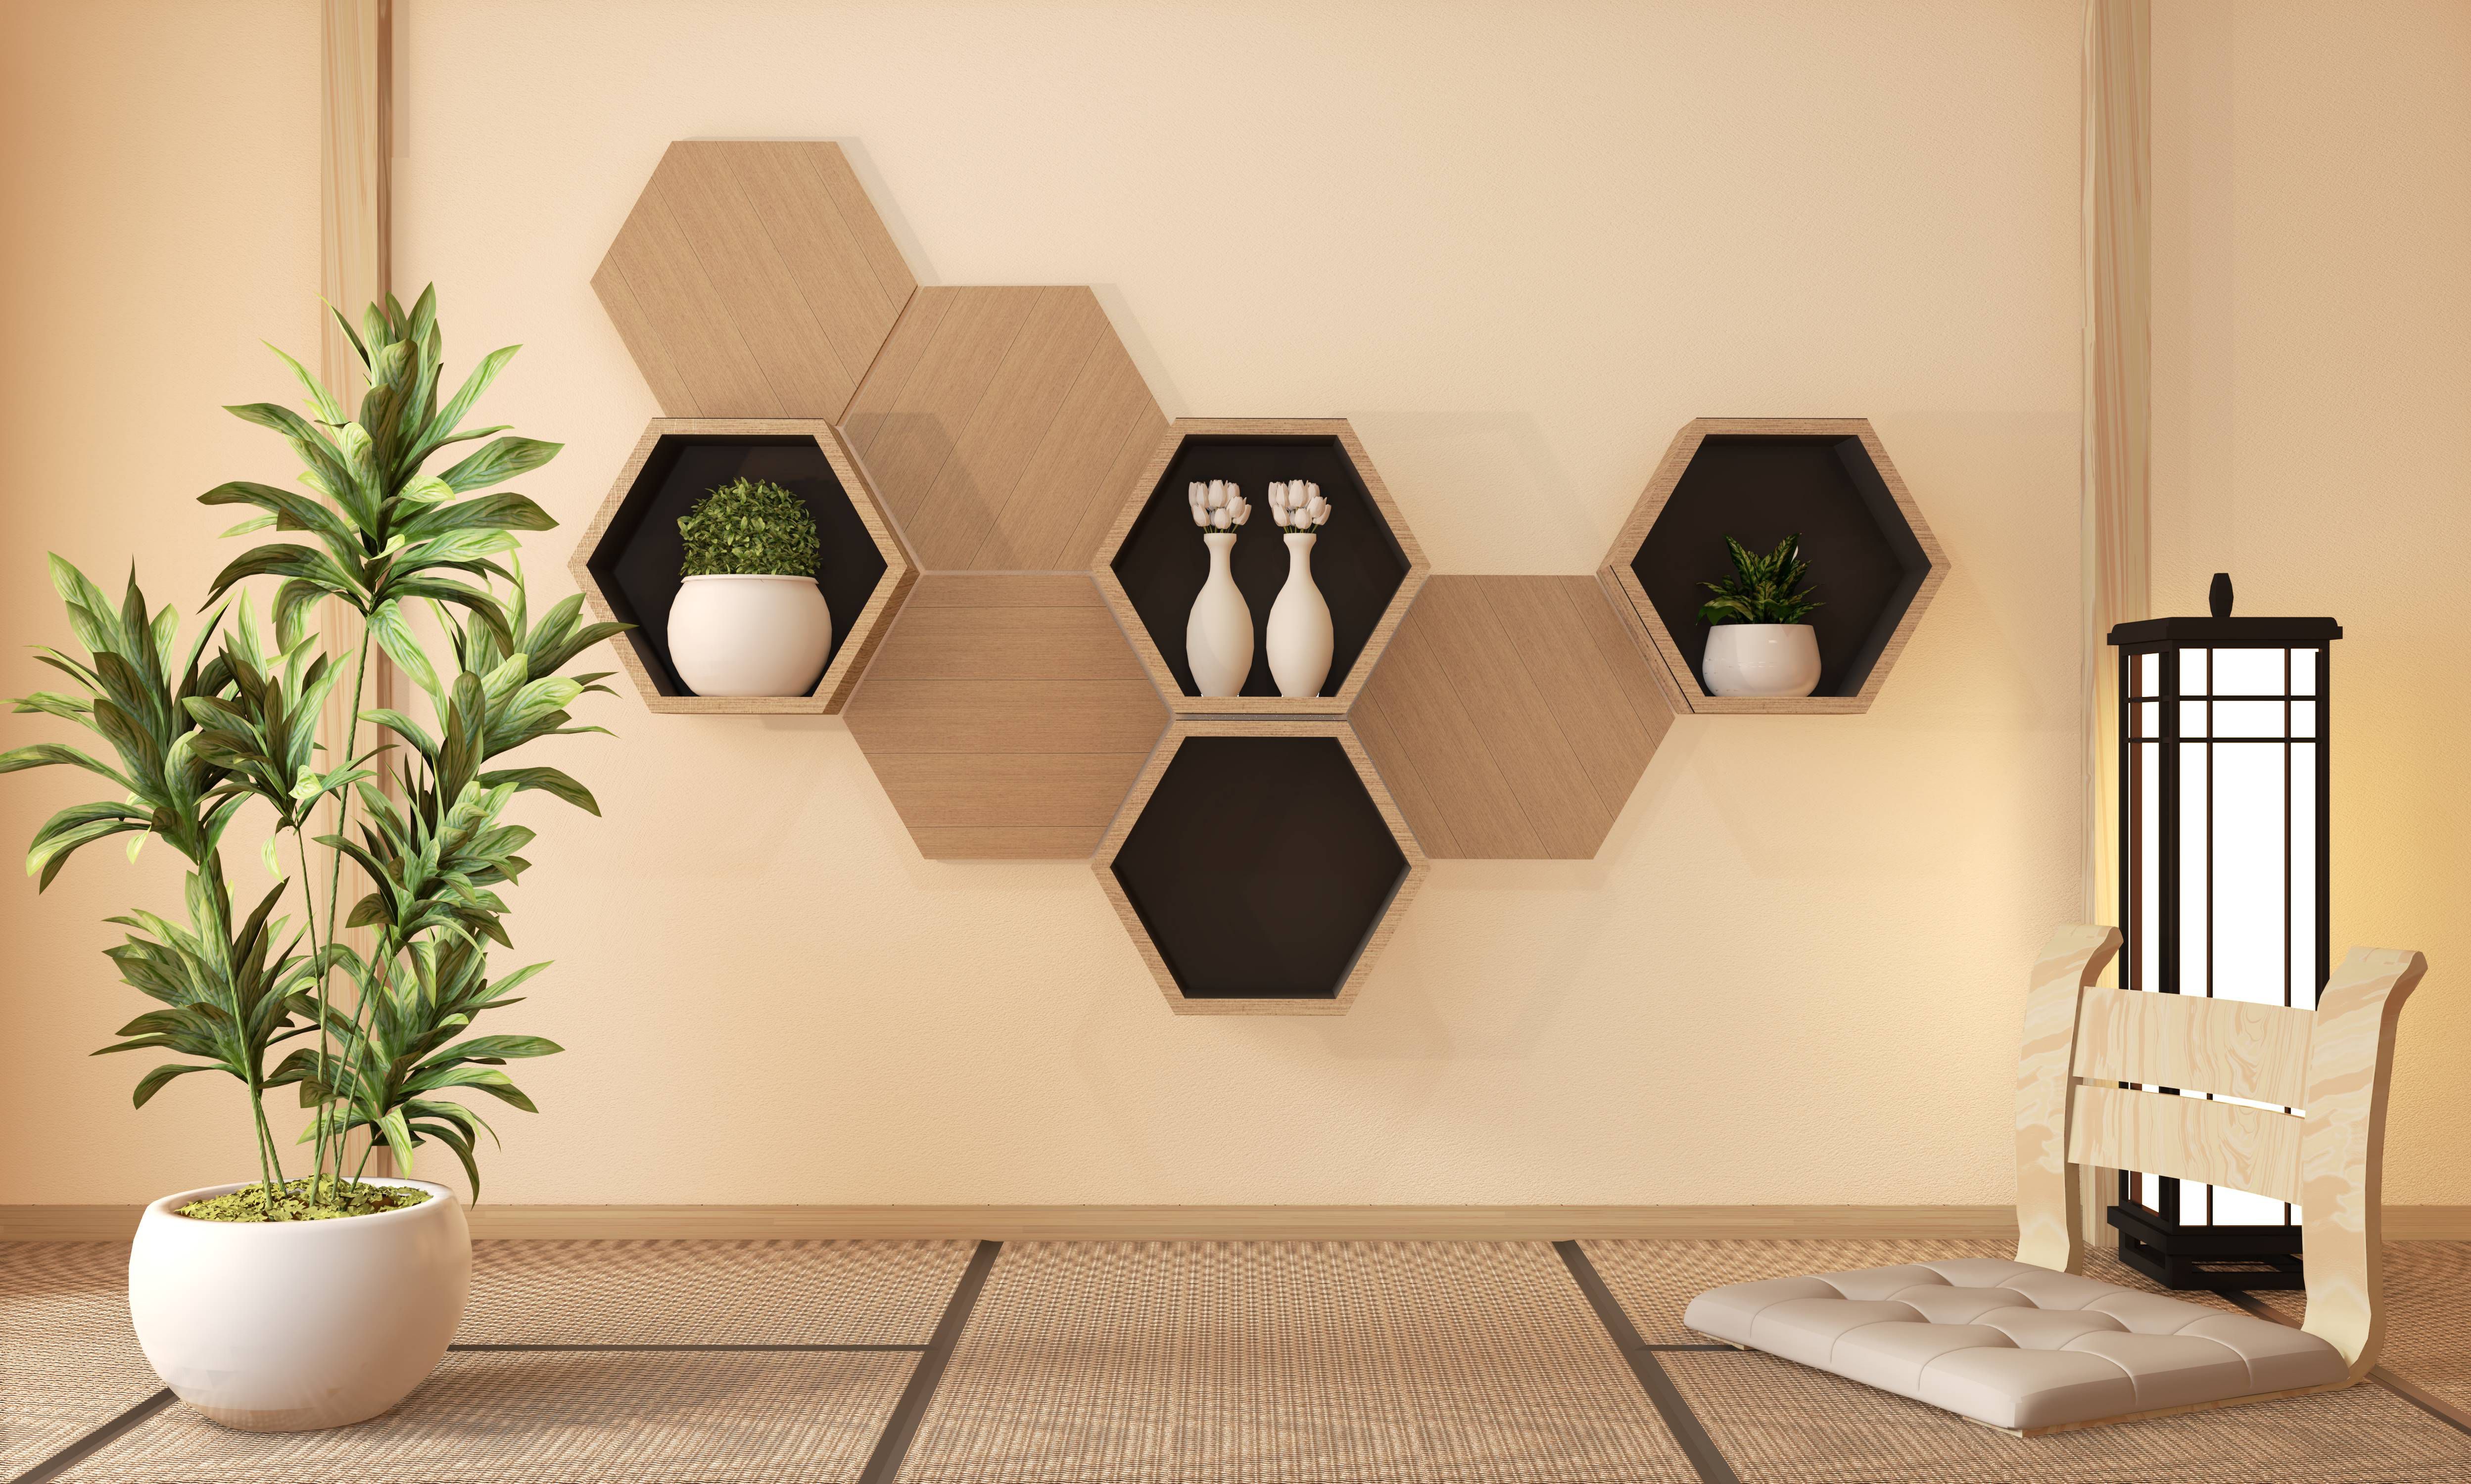 Inspirasi Hiasan Dinding Ruang Tamu - Hiasan Hexagonal